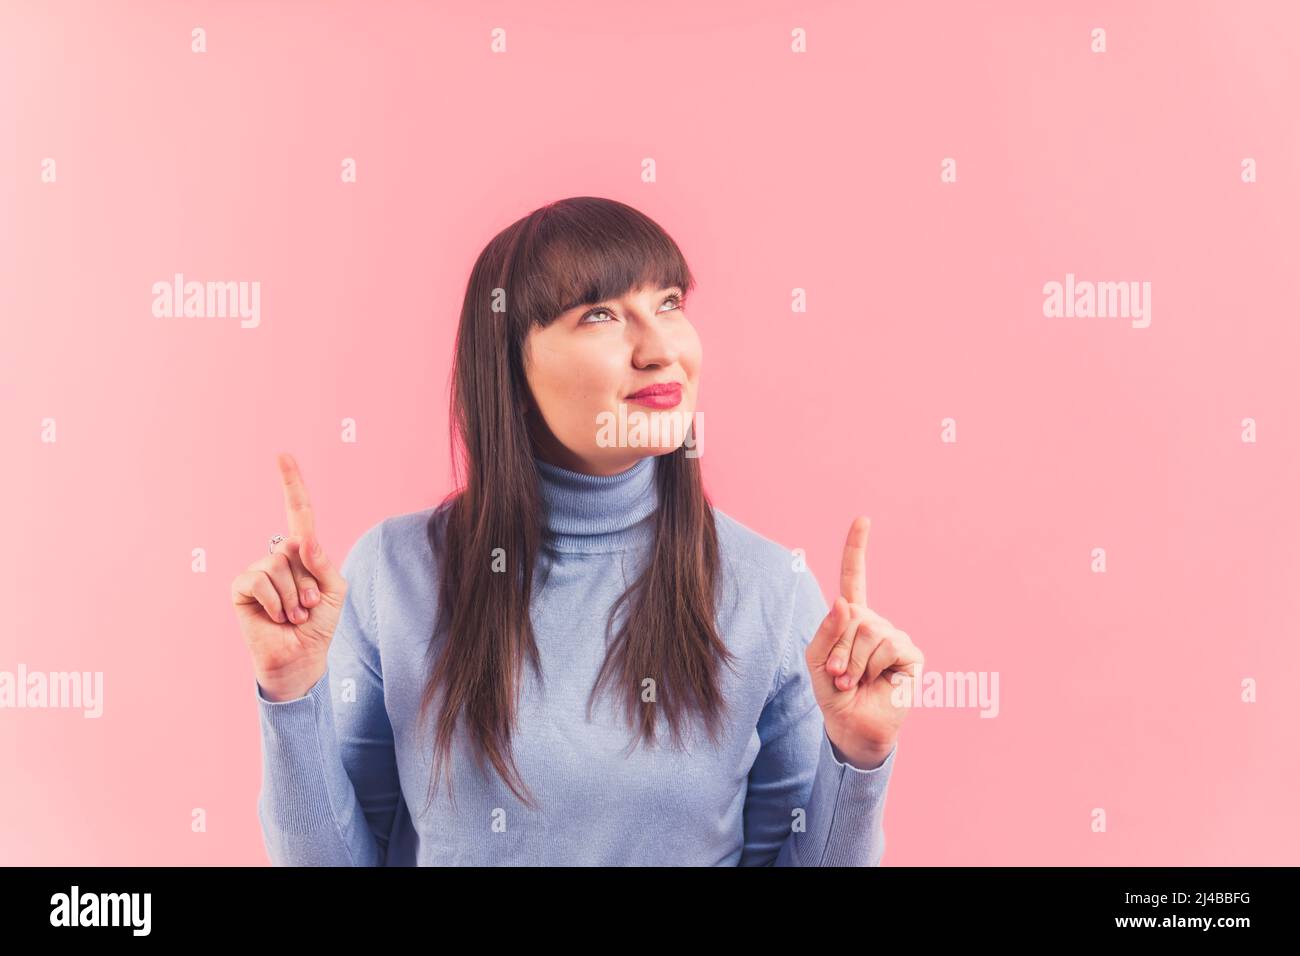 Hübsche junge Frau zeigt und sieht oben, Studio geschossen rosa Hintergrund isoliert Kopie Raum Anzeigen und Promotion-Konzept . Hochwertige Fotos Stockfoto